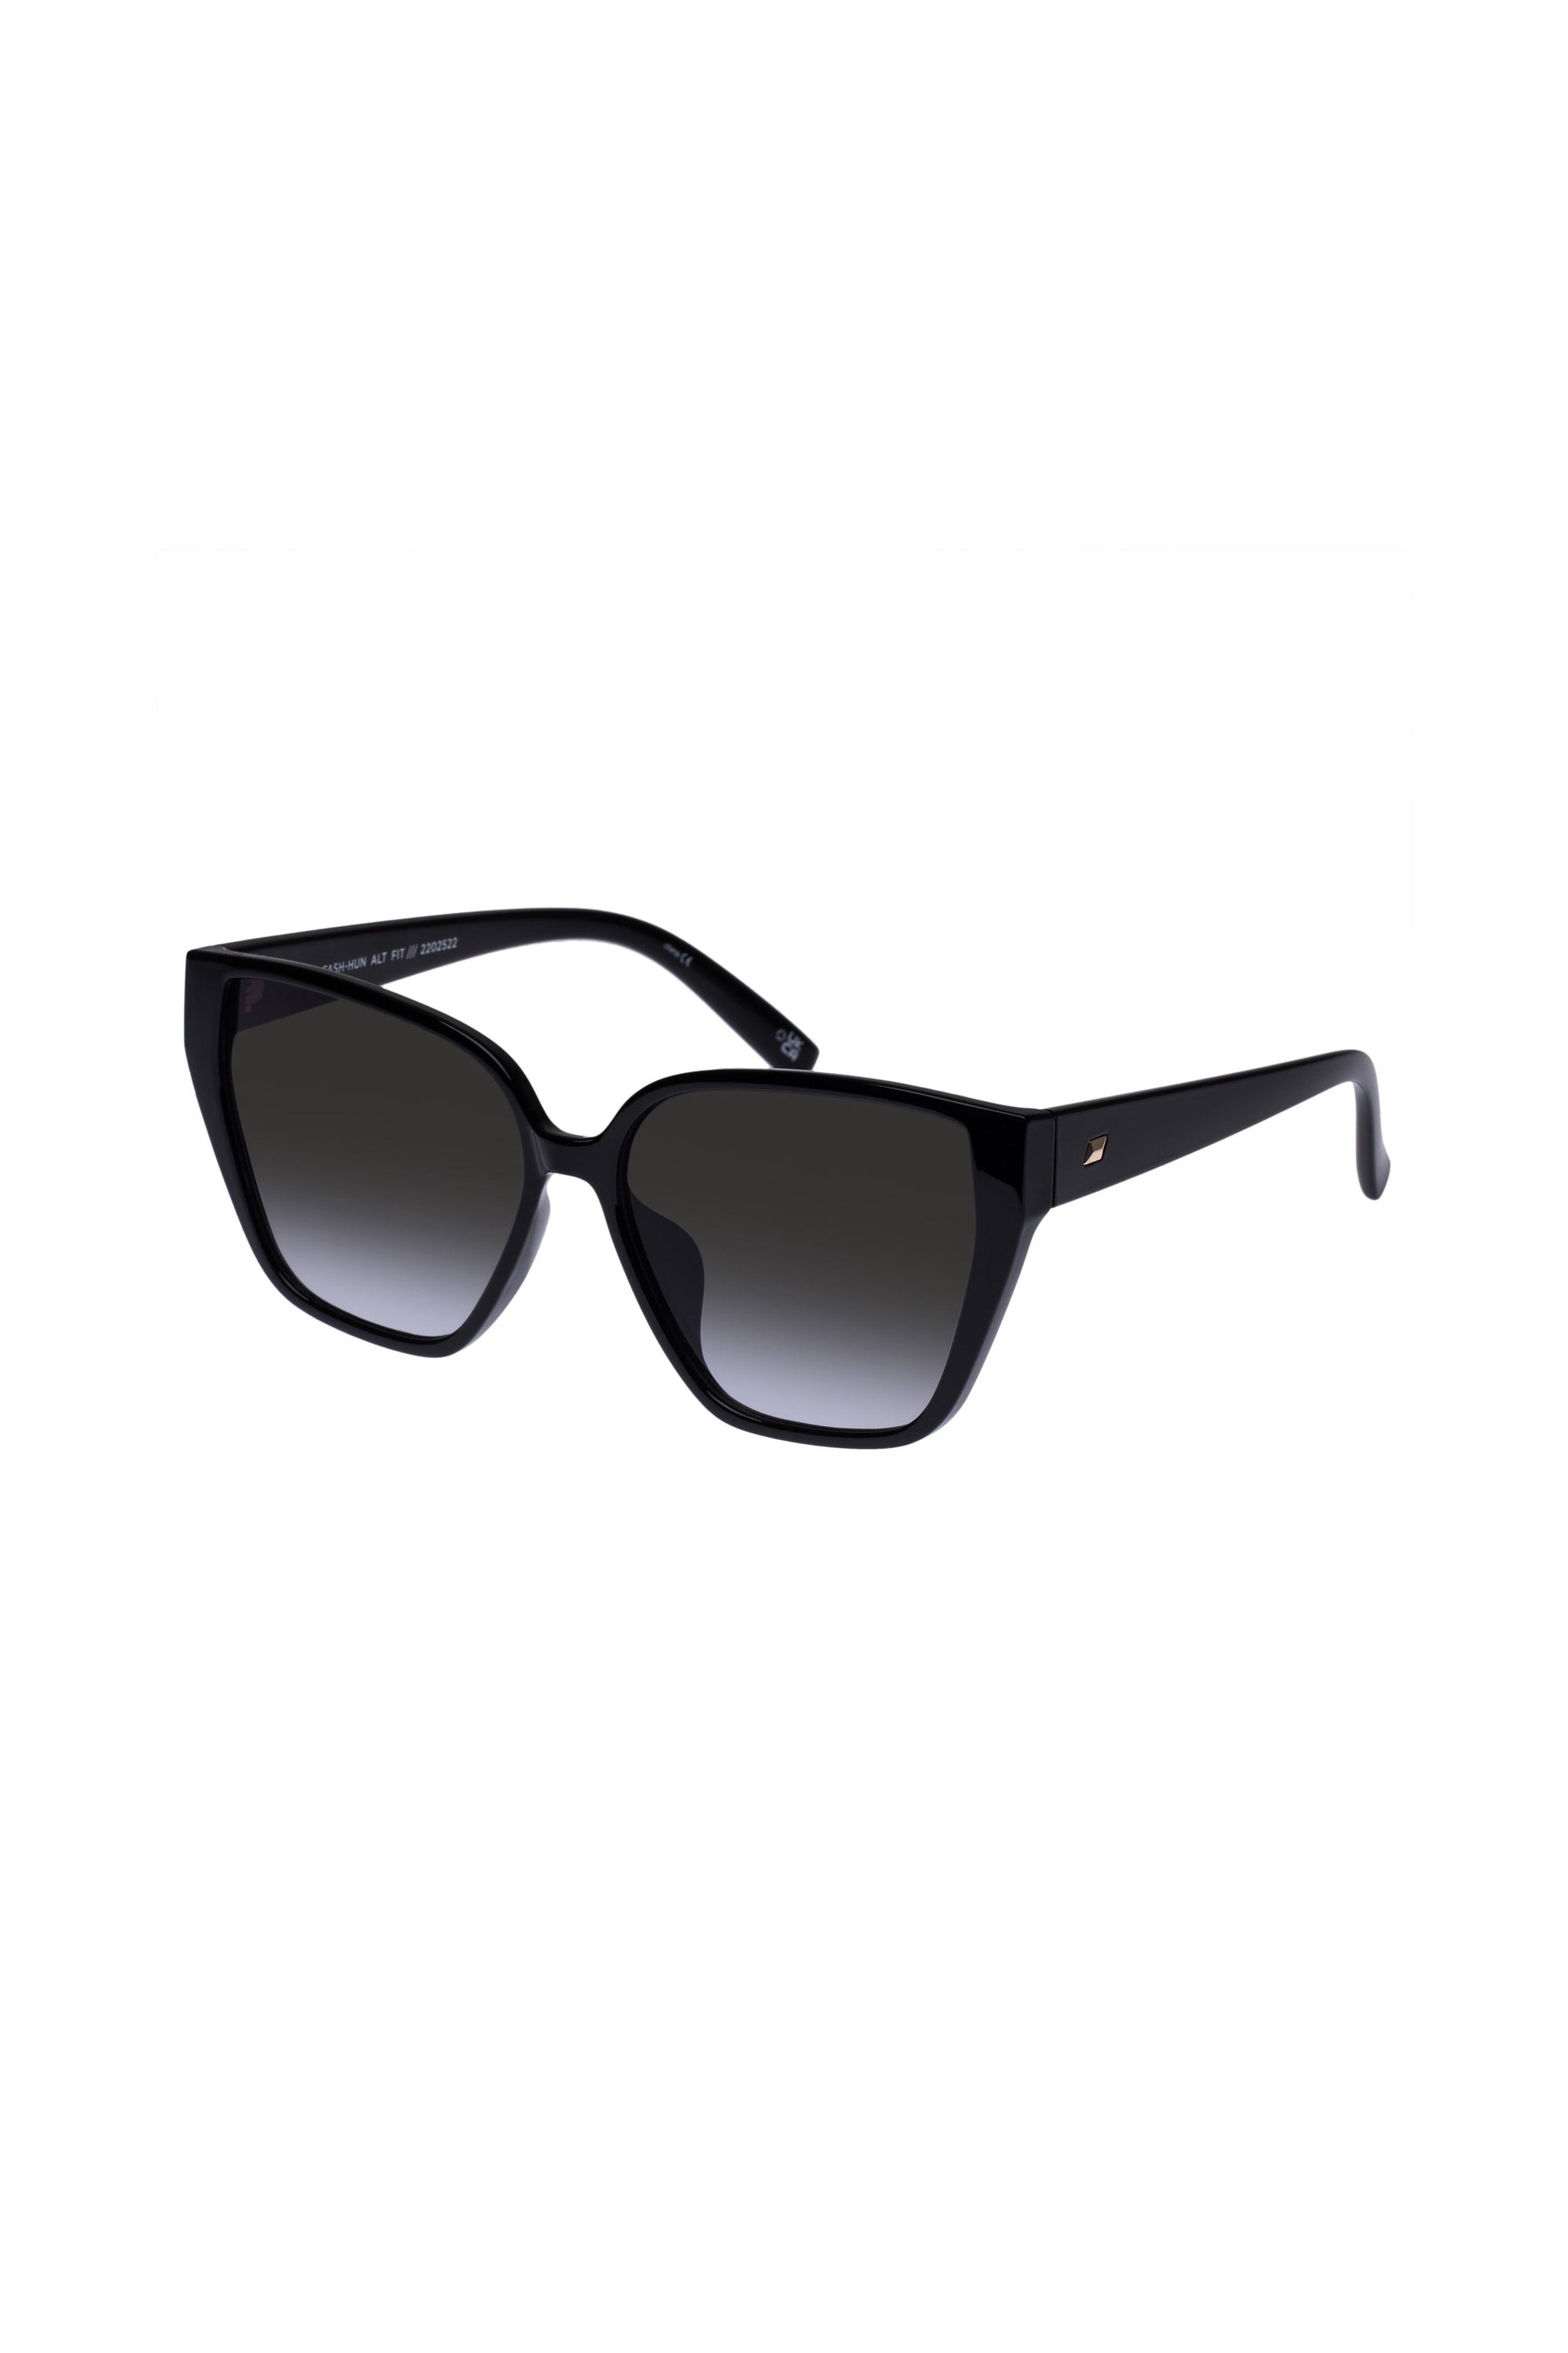 Fash-Hun Sunglasses - Shiny Black